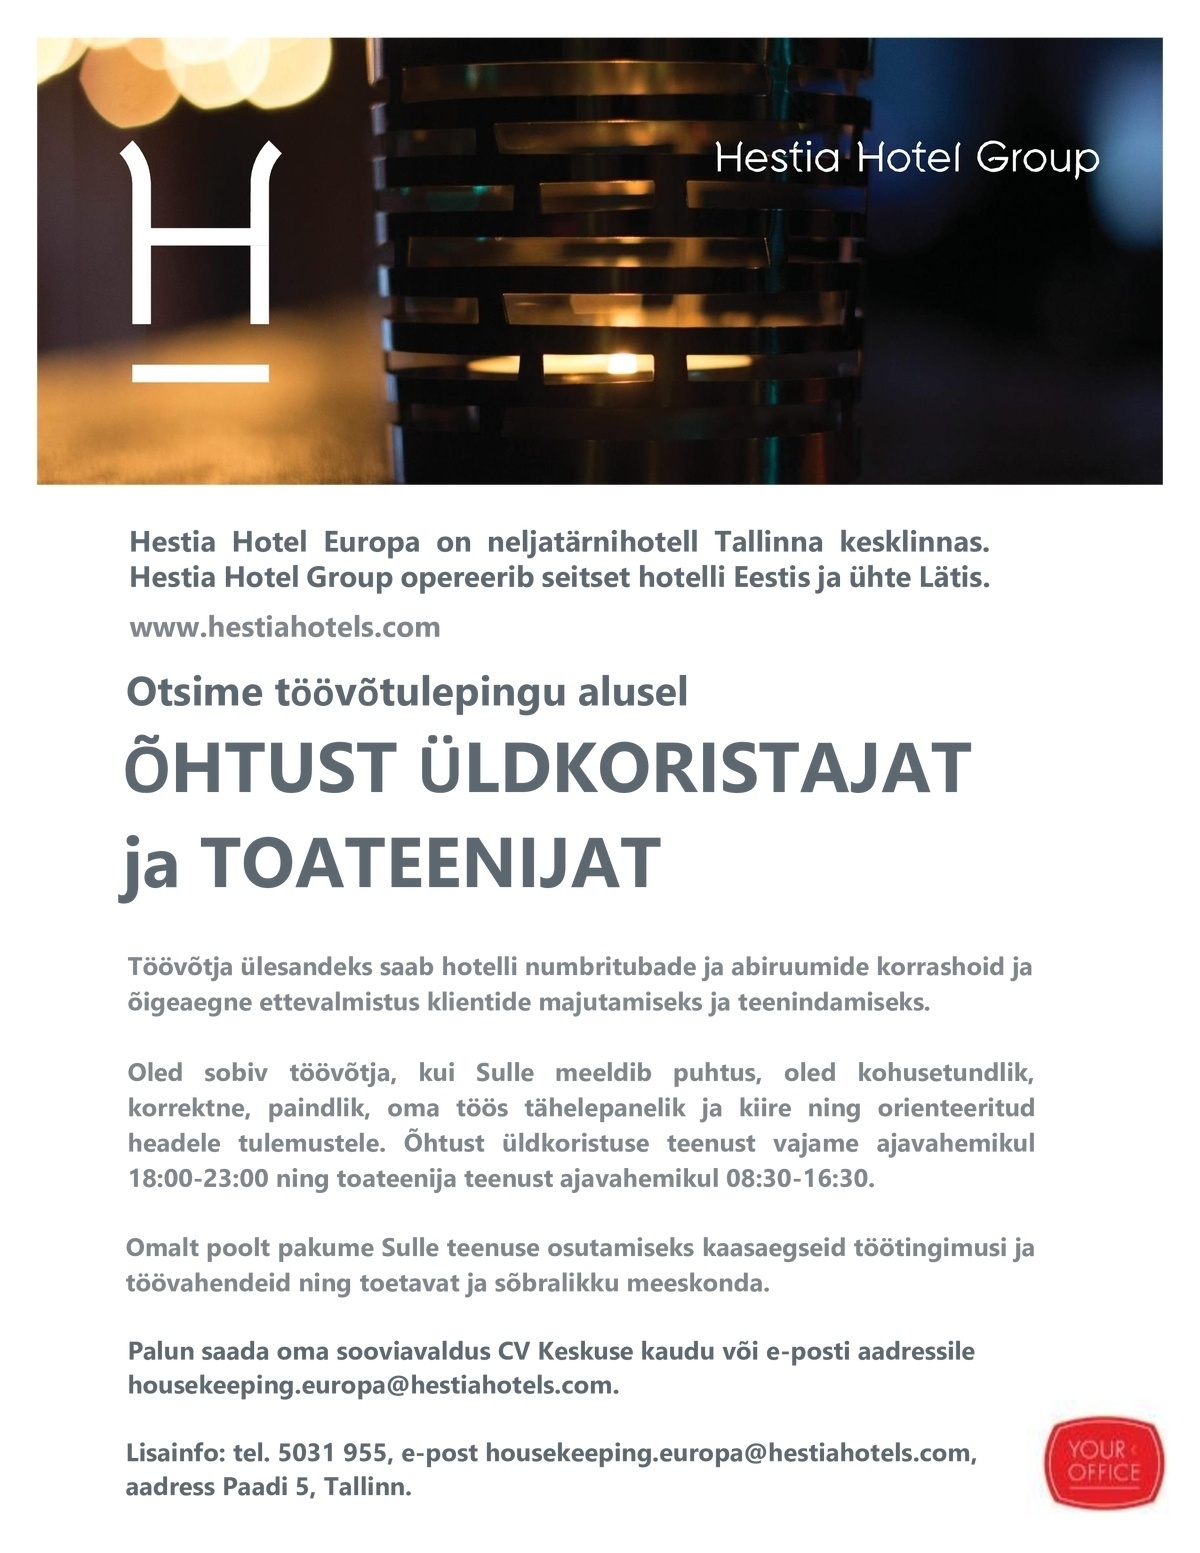 Hestia Hotel Europa Üldkoristaja / Toateenija (töövõtulepingu alusel)